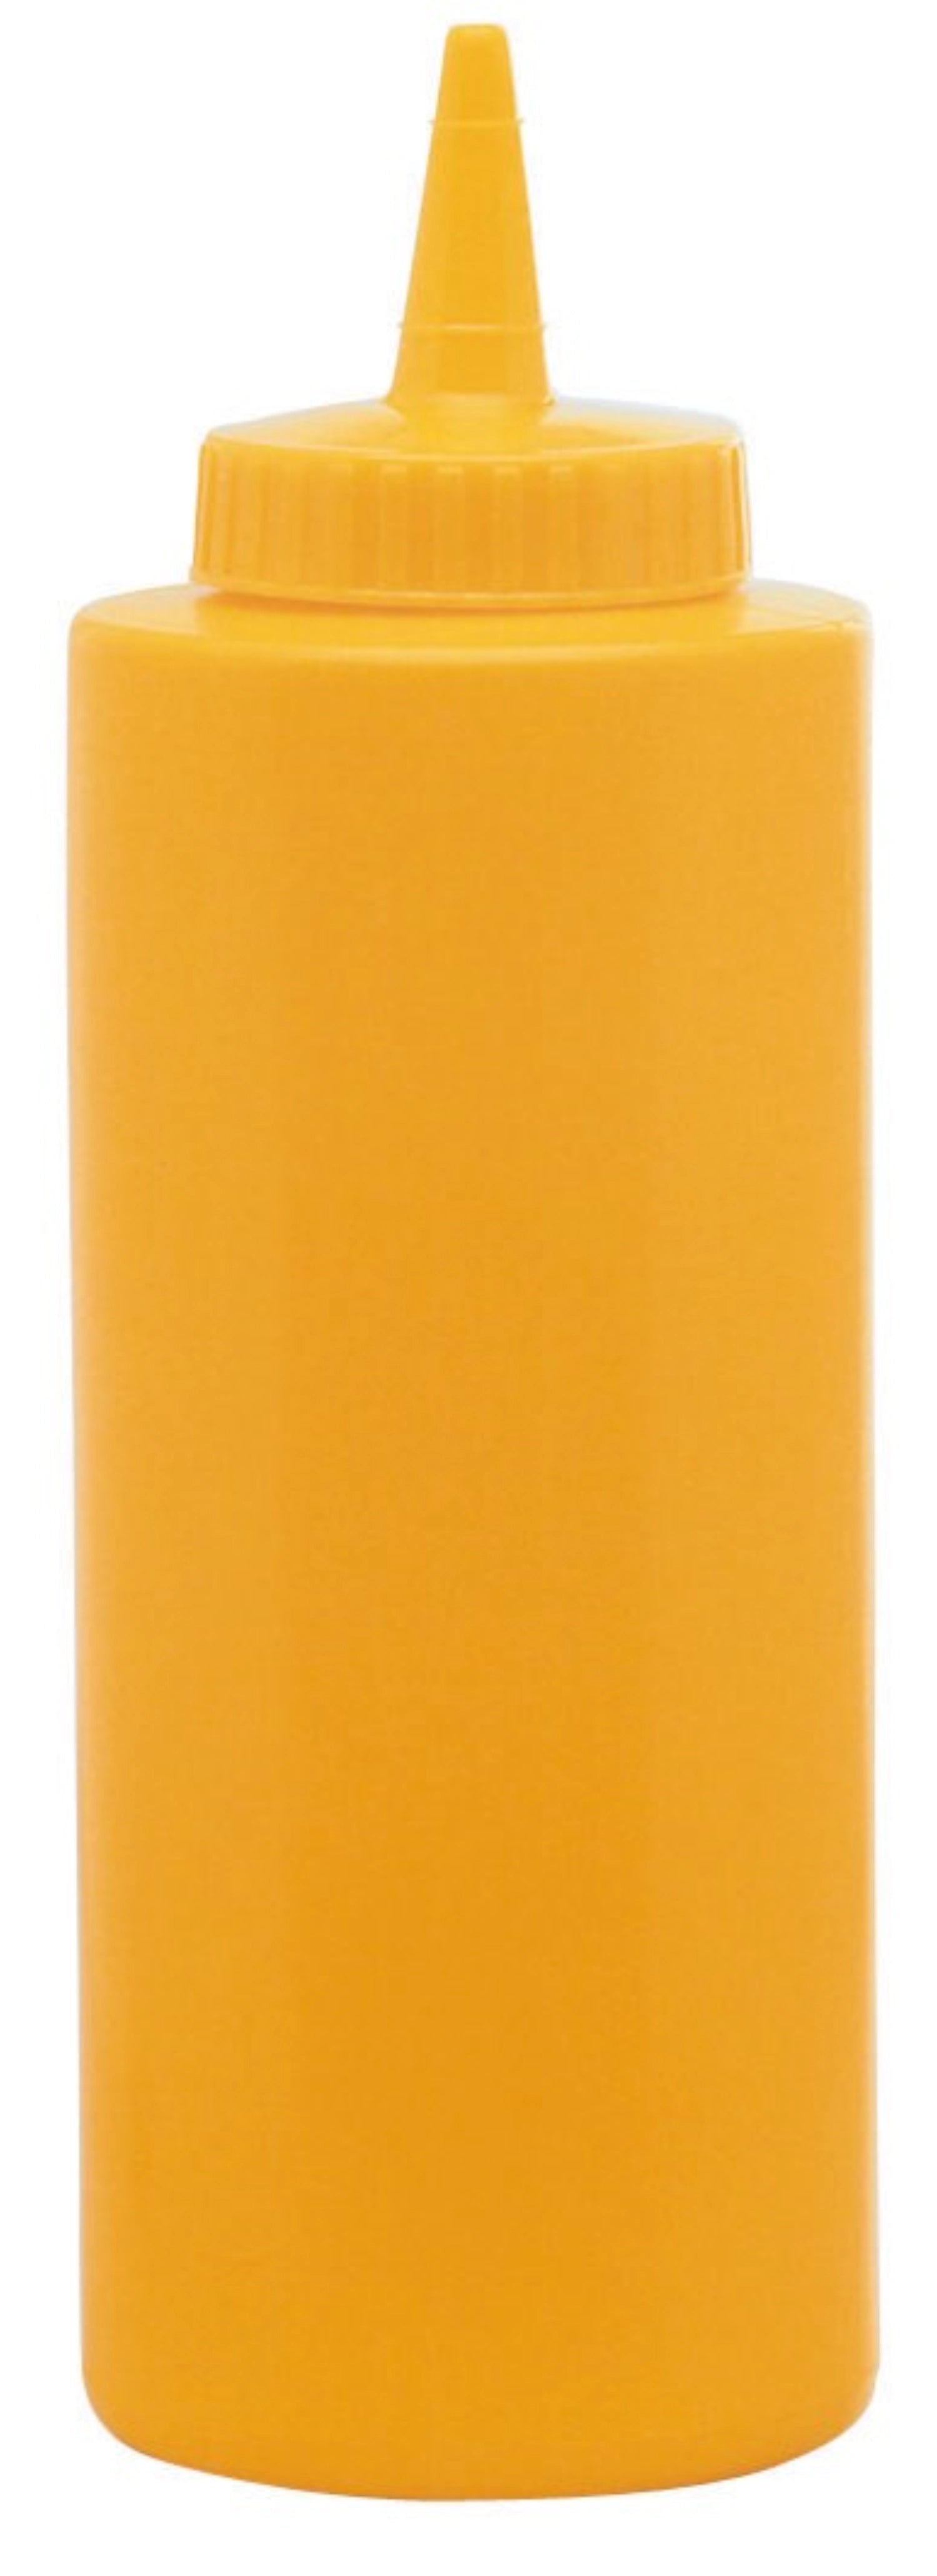 Saucen Dispenser gelb 0.708lt - KAQTU Design